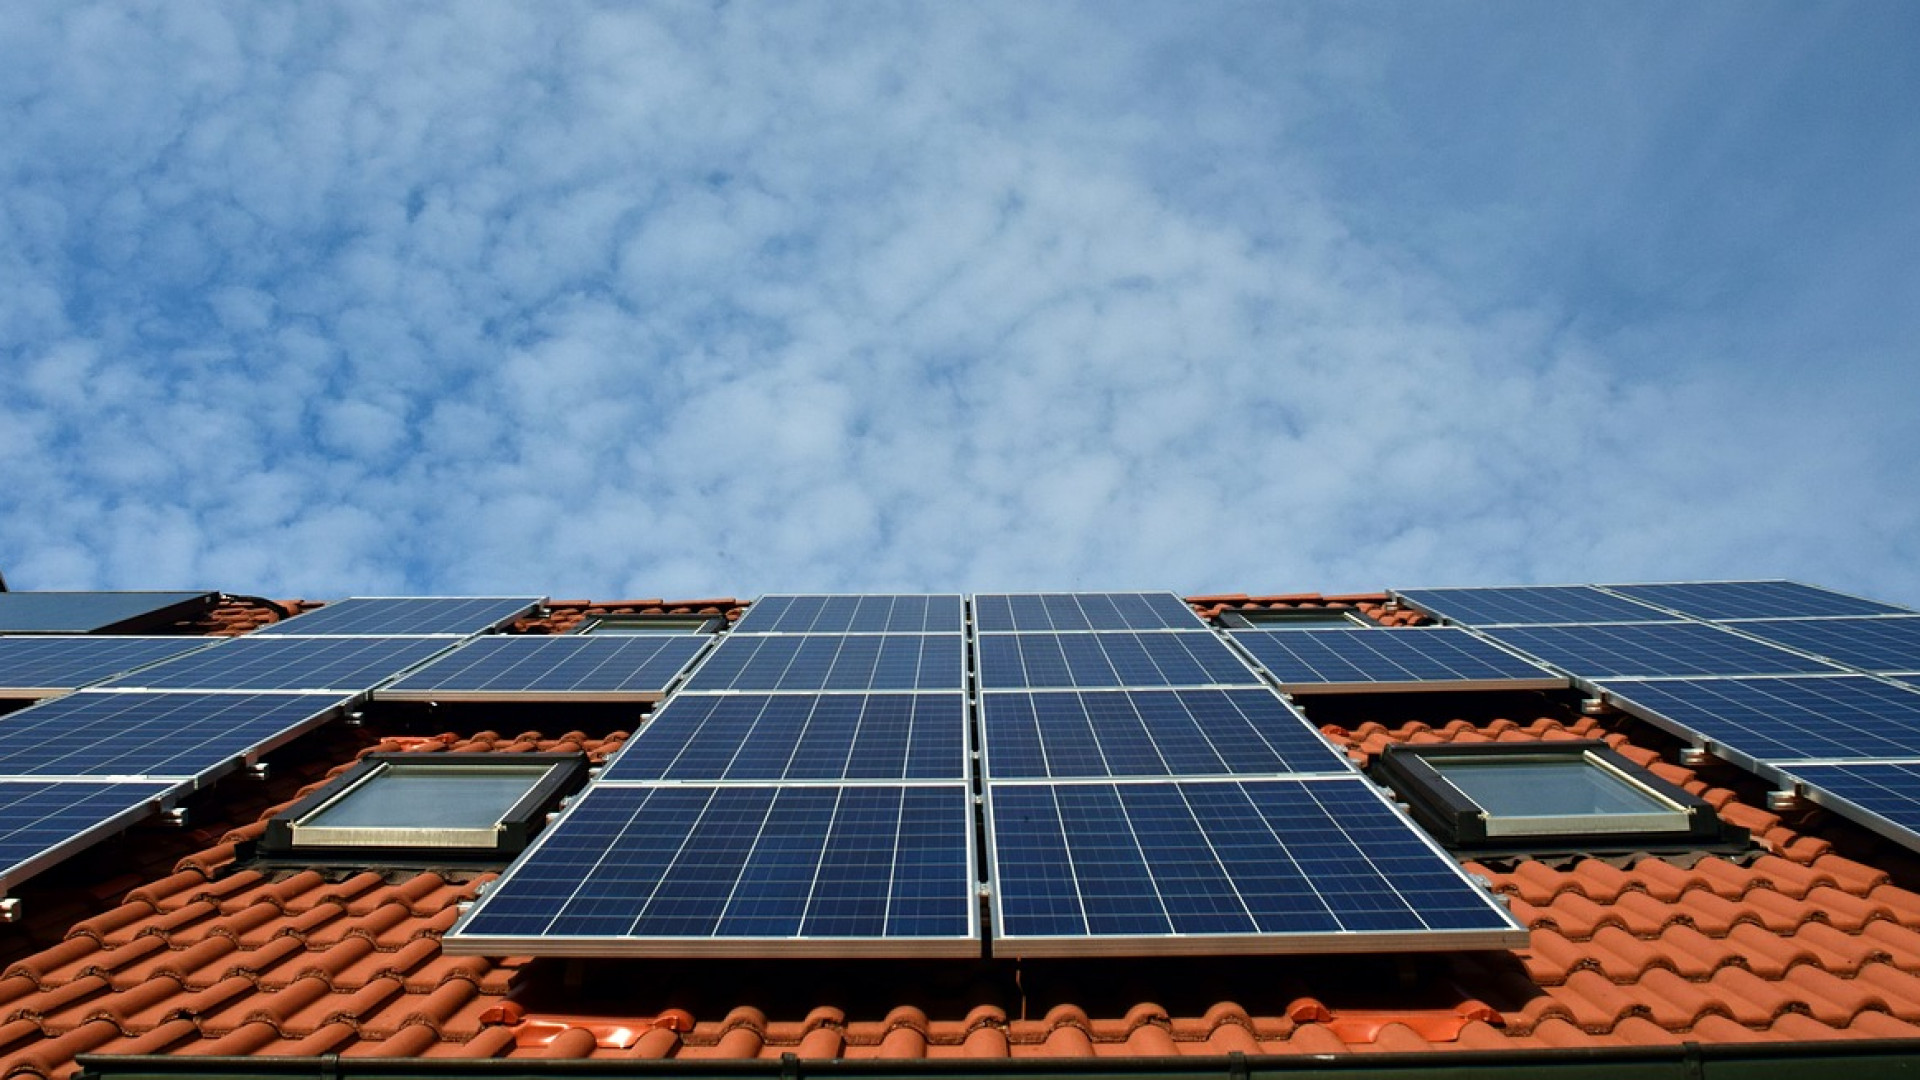 Vous cherchez une solution rentable en termes d’énergie : les panneaux solaires sont une excellente solution